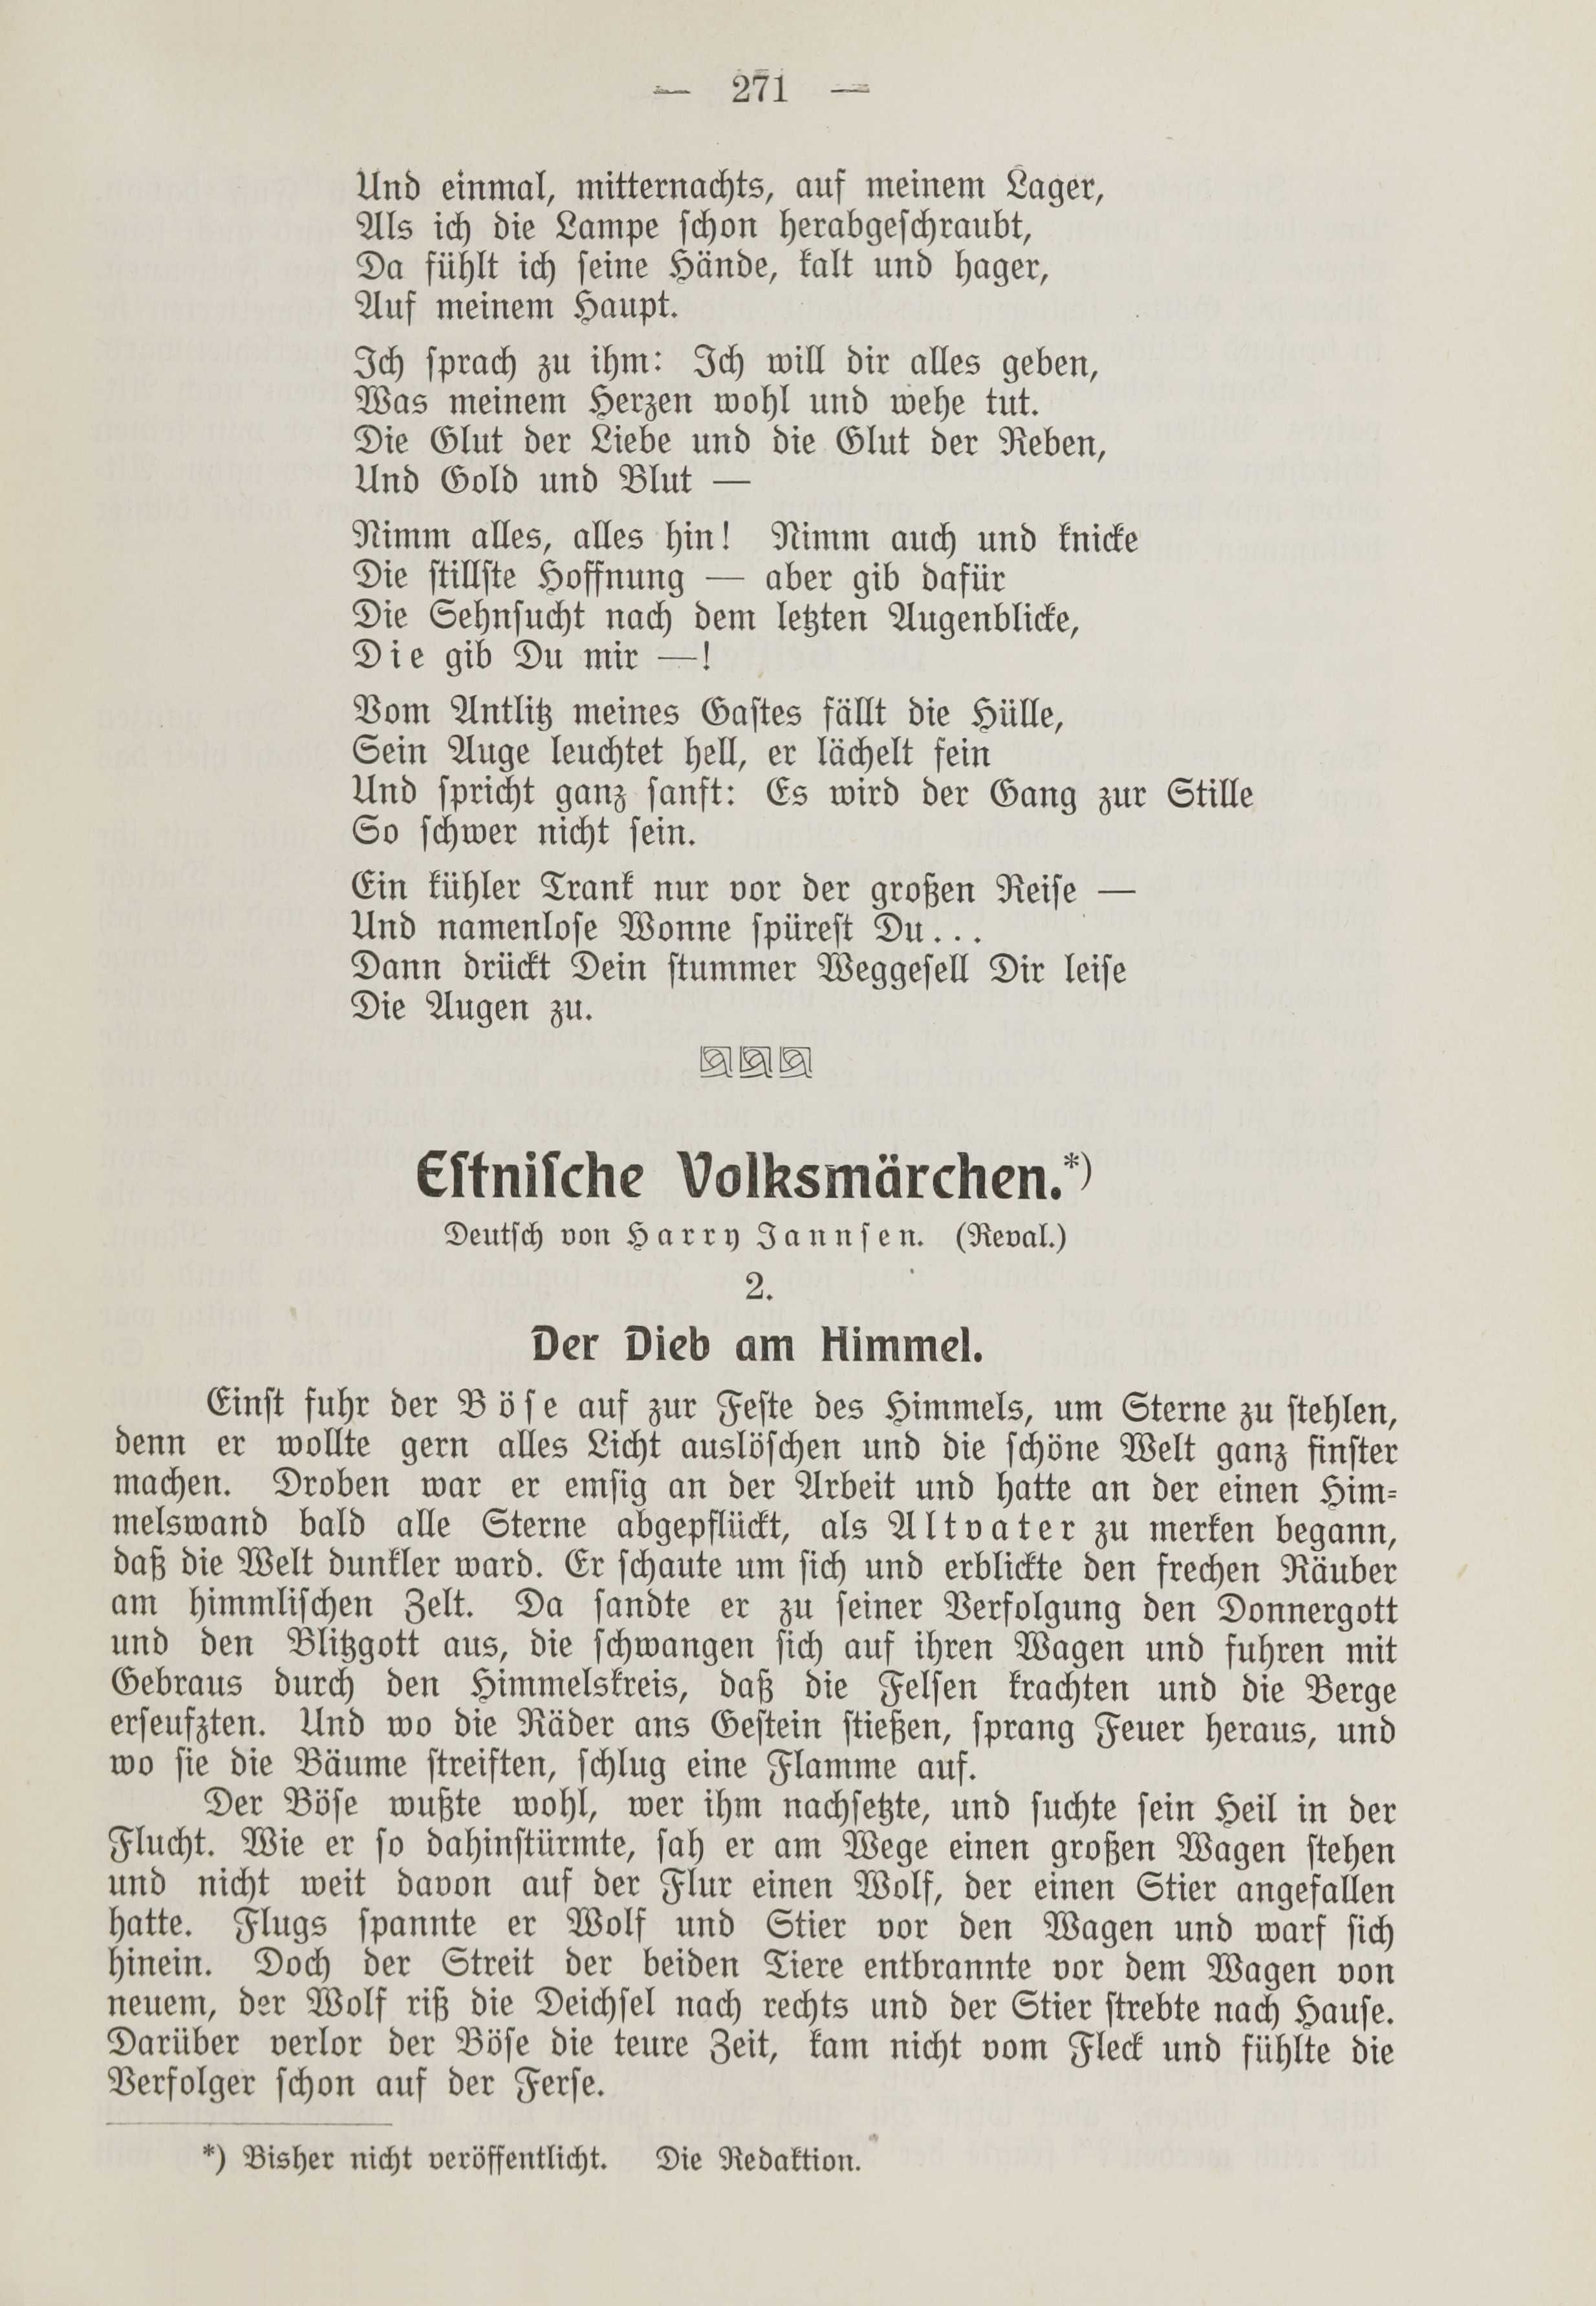 Deutsche Monatsschrift für Russland [1] (1912) | 279. (271) Main body of text